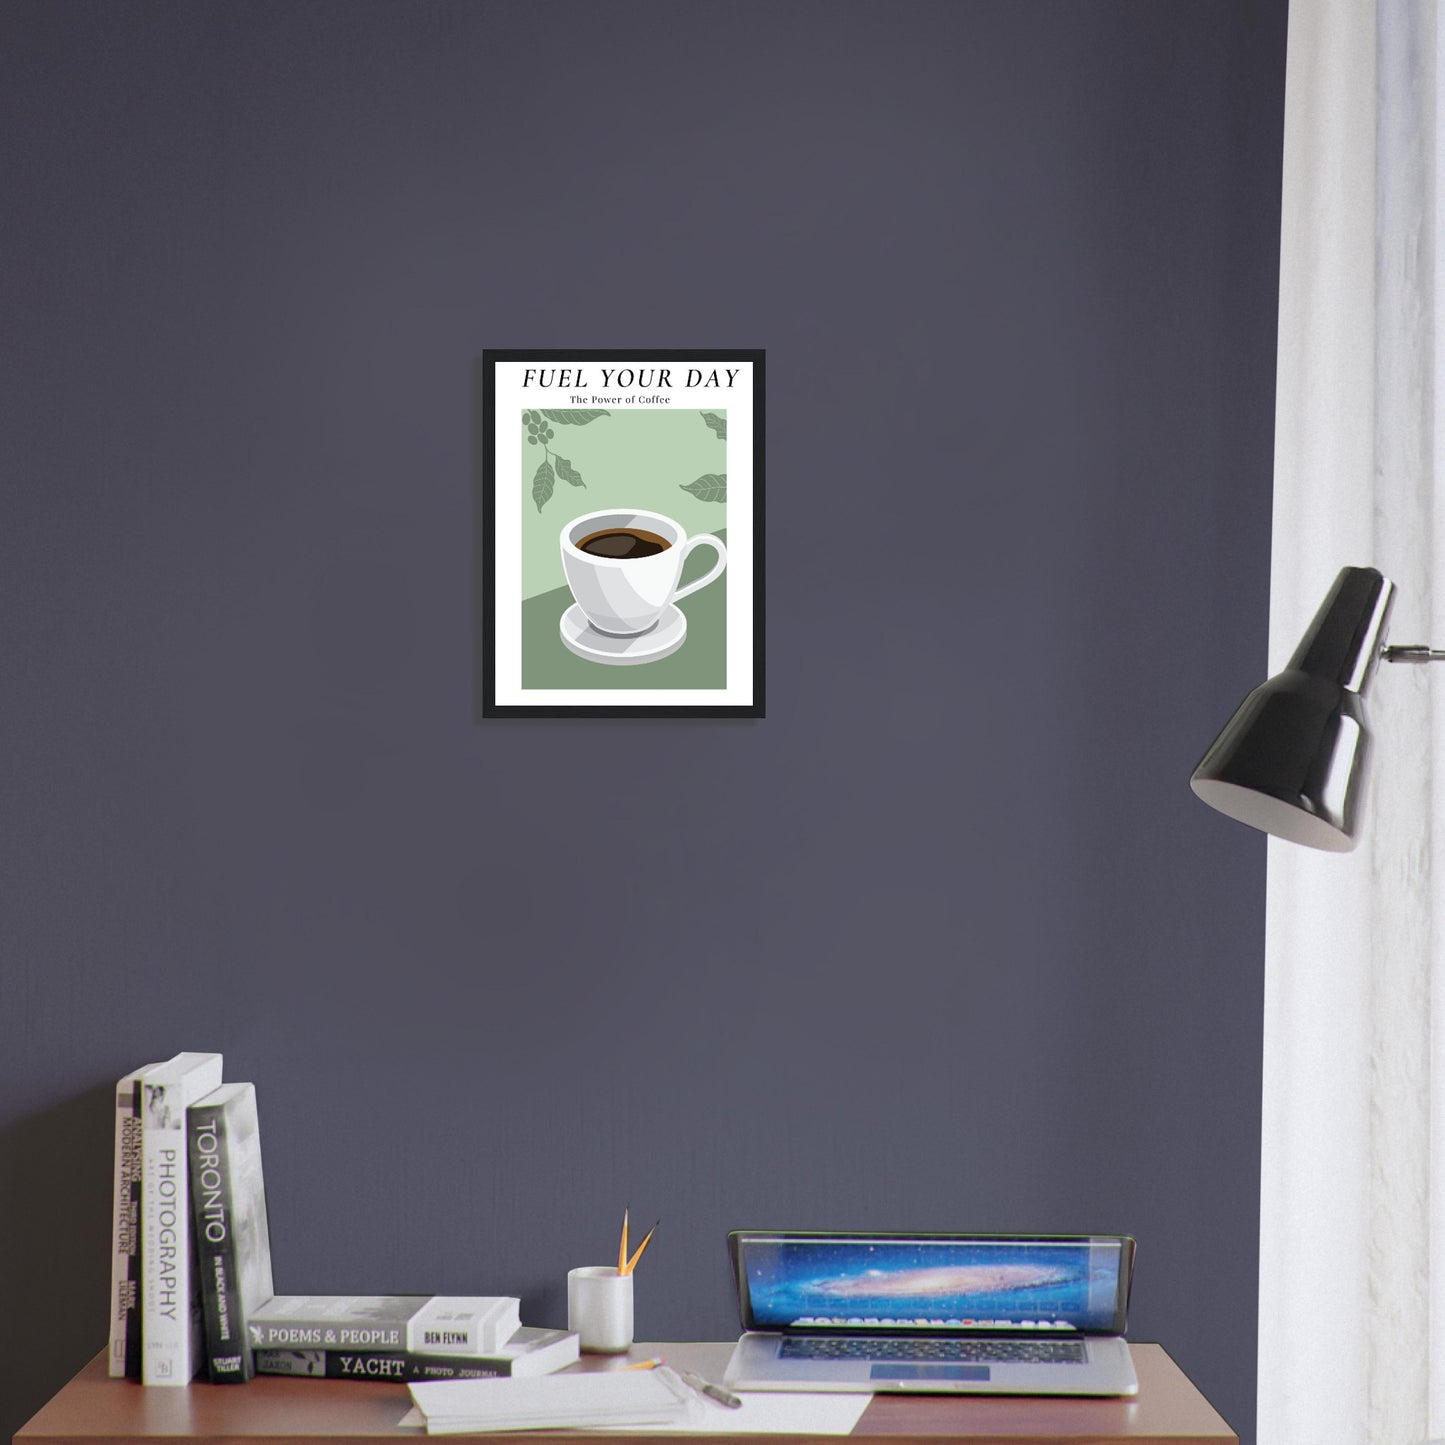 Ein Bild im Schwarzen Rahmen mit einer Tasse Kaffee auf einem Grünfarbigen Hintergrund mit Arabica Blätter als Akzente. Oben mittig des Bildes steht: "FUEL YOUR DAY" mit der Unterschrift "The Power of Coffee" über einem Schreibtisch an der Wand.